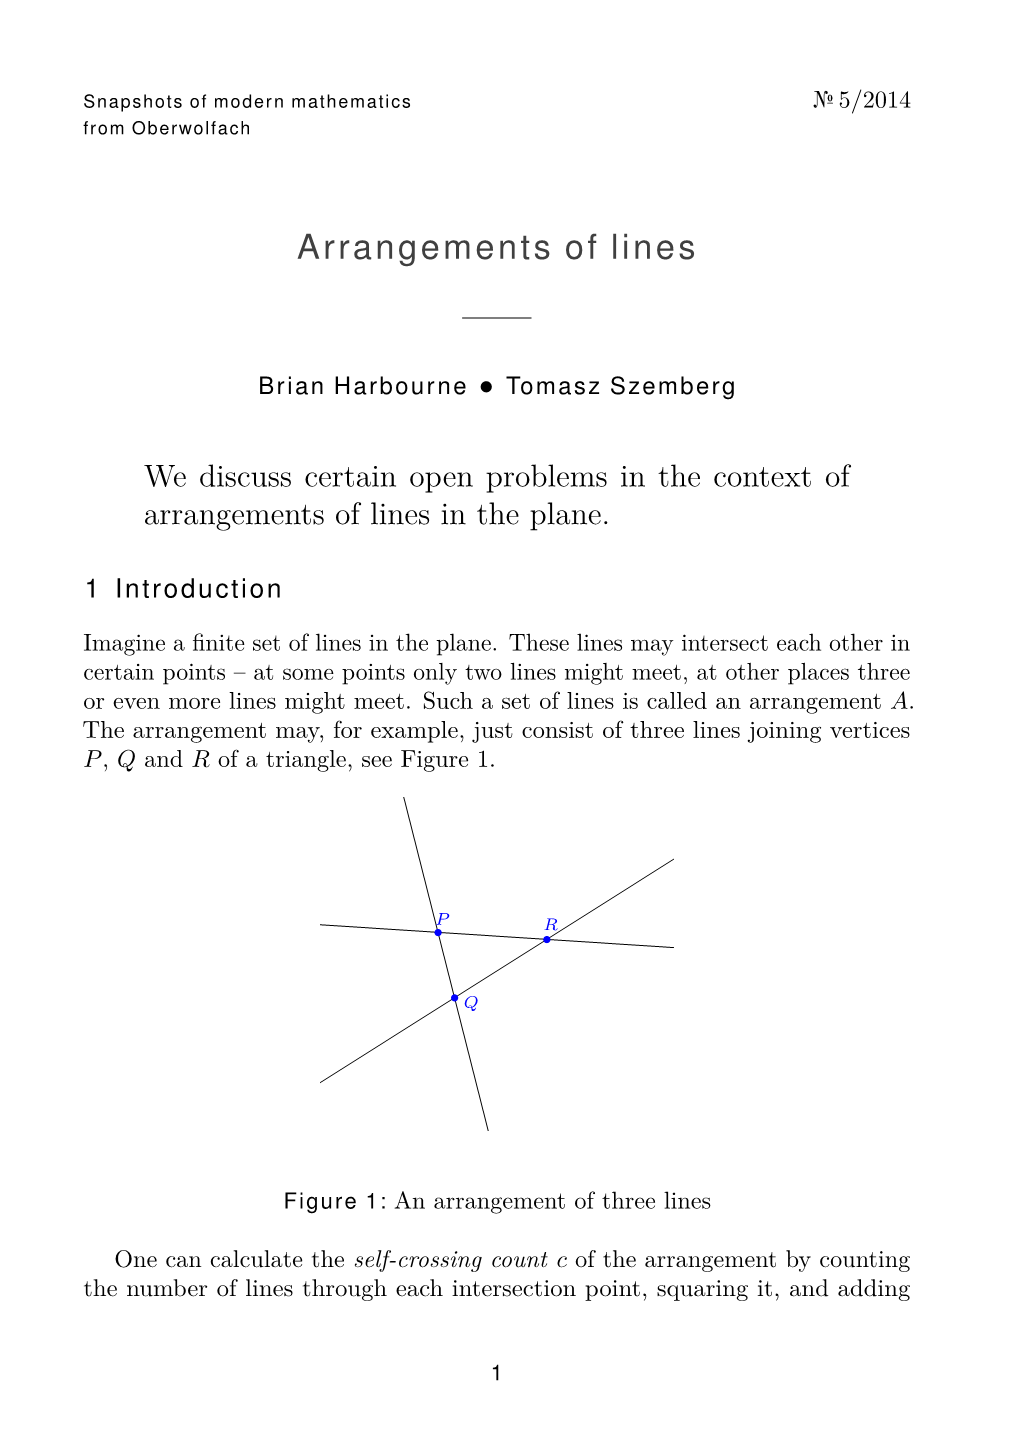 Arrangements of Lines